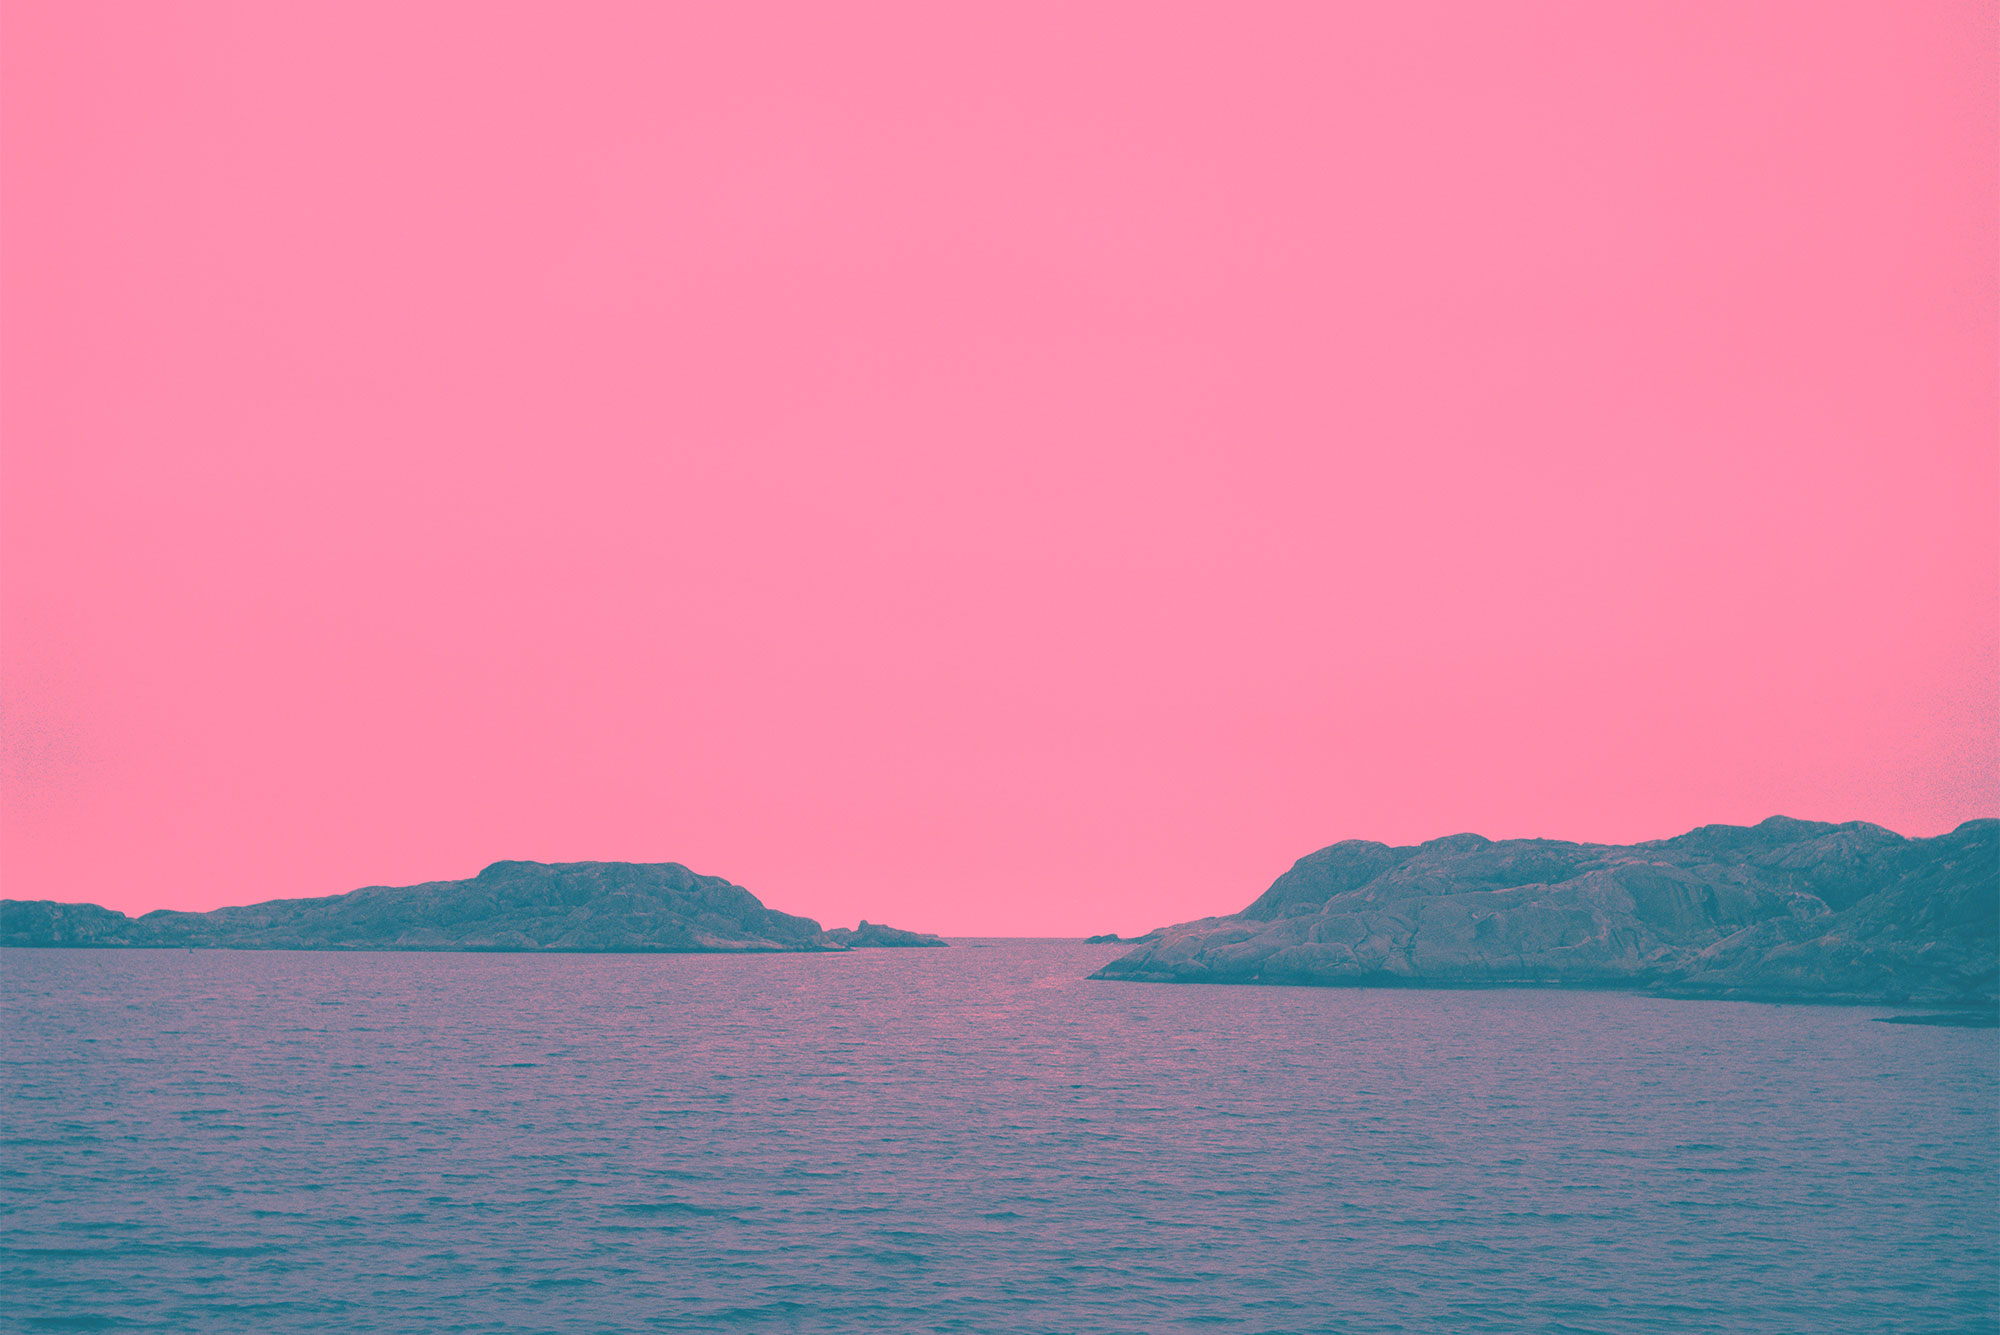 foto av horisont mot hav med manipulerade färger i rosa och lila